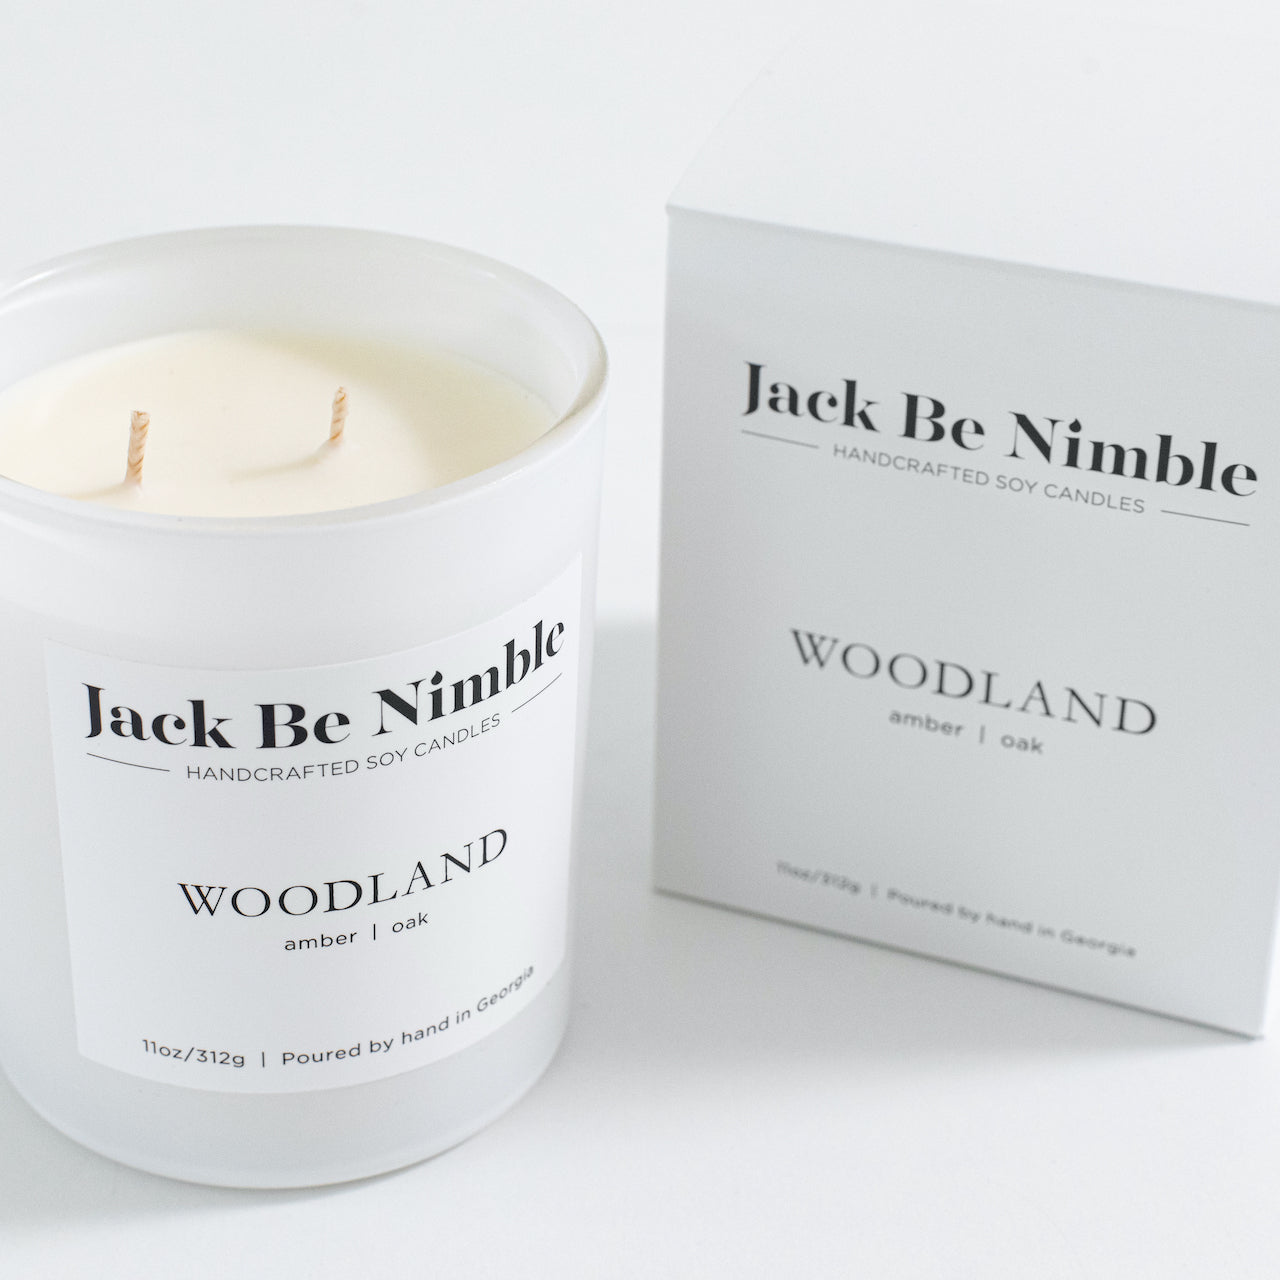 11 oz Woodland Soy Candle